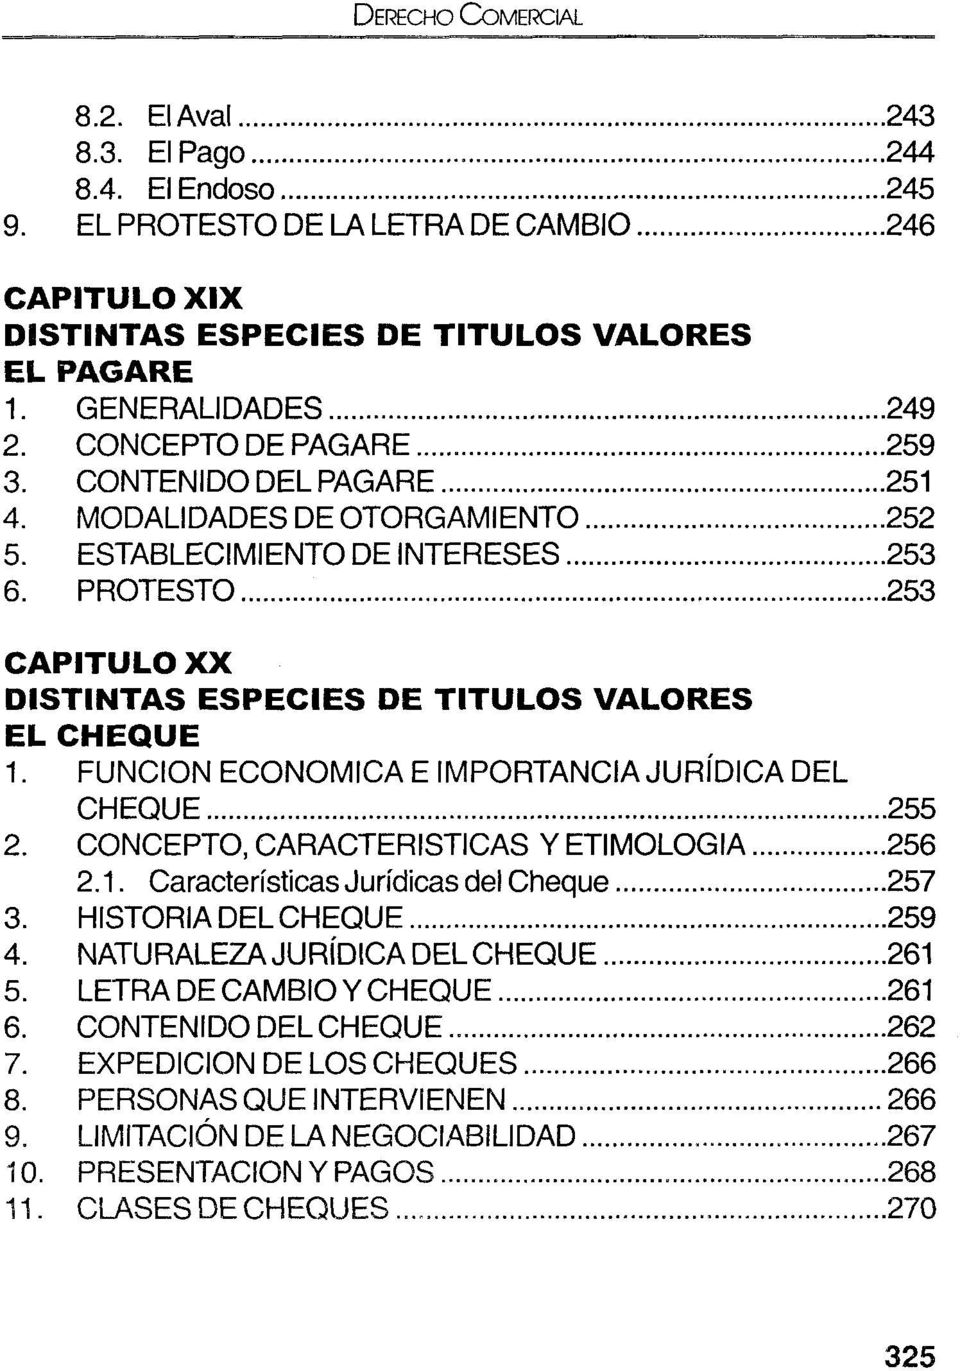 ..253 CAPITULO X X DISTINTAS ESPECIES DE TITU LO S VALORES EL CHEQUE 1. FUNCION ECONOMICA E IMPORTANCIA JURÍDICA DEL CHEQUE...255 2. CONCEPTO, CARACTERISTICAS Y ETIMOLOGIA...256 2.1. Características Jurídicas del Cheque.